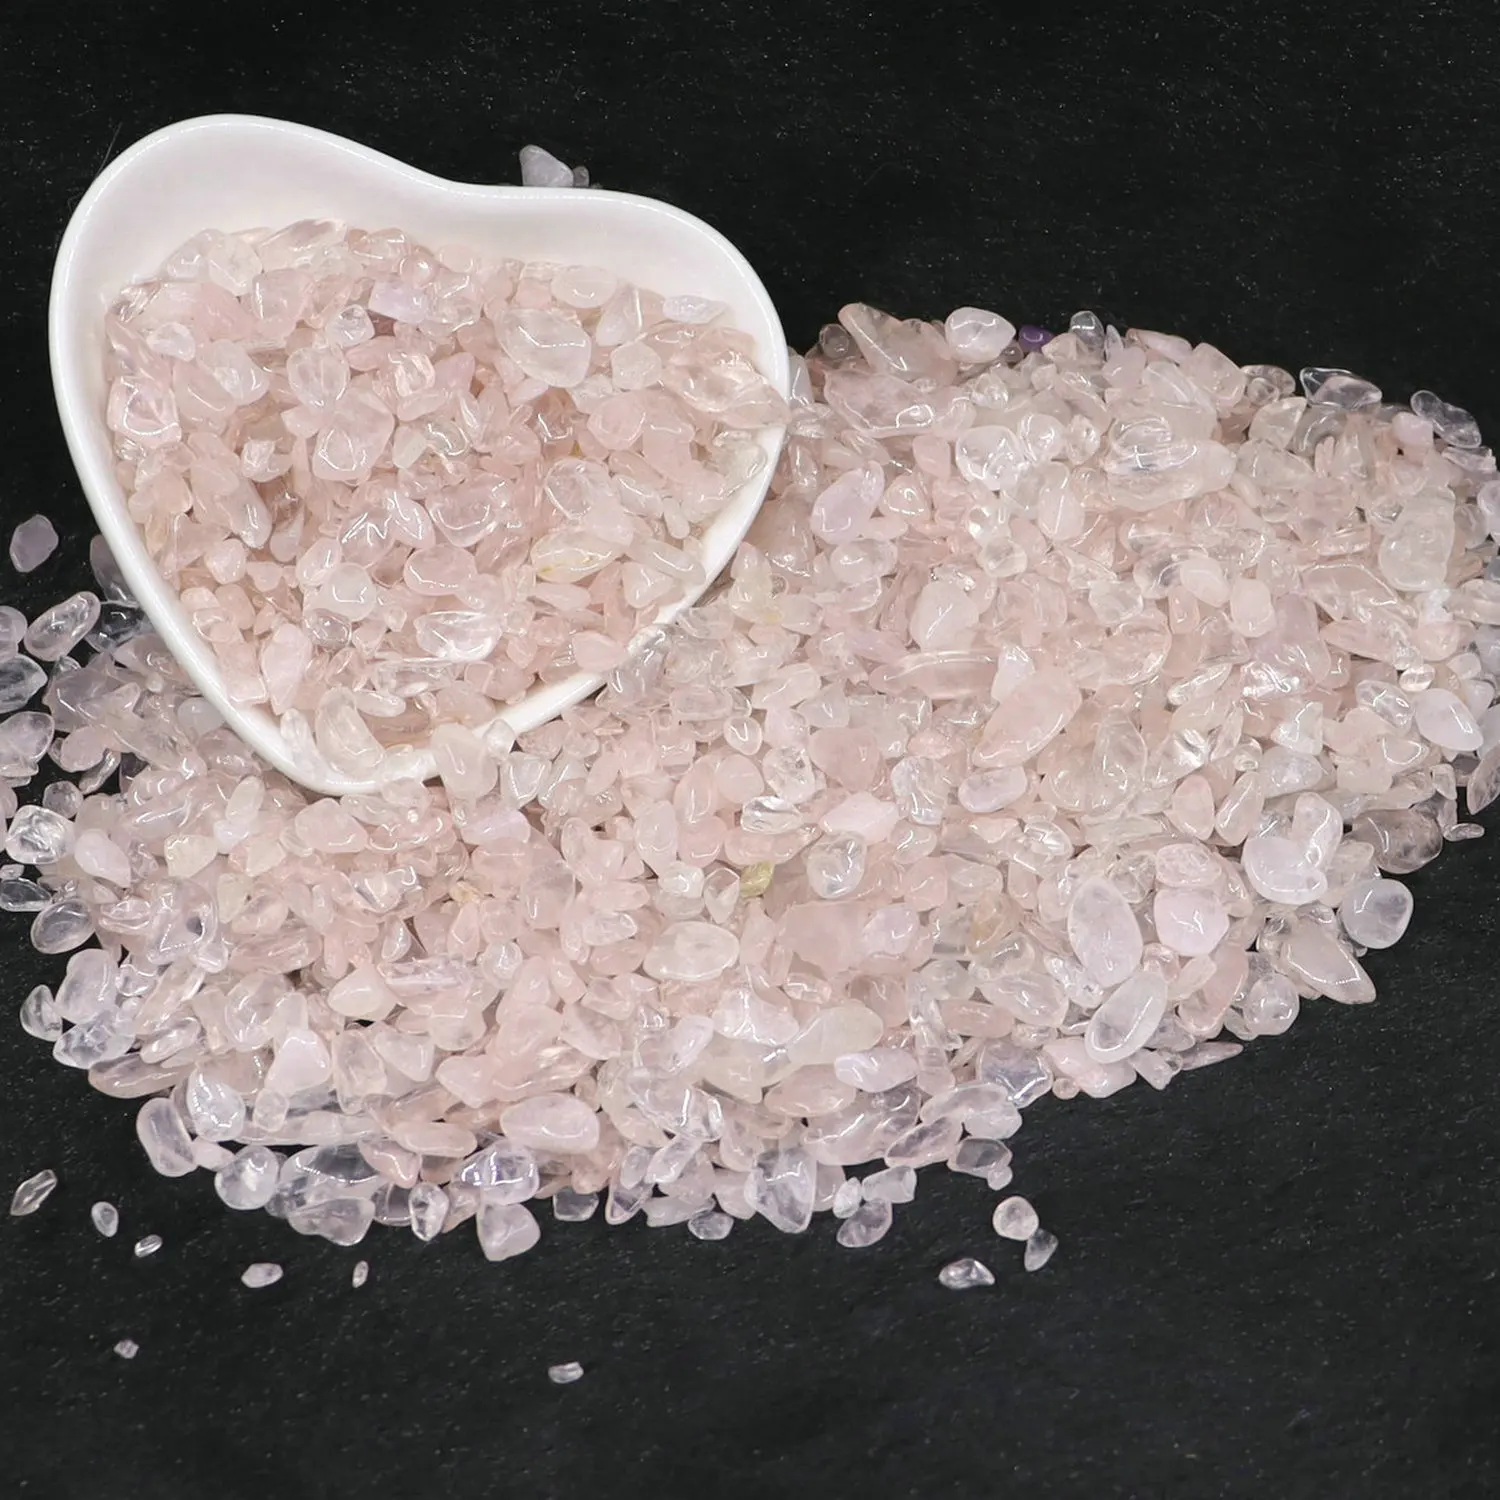 Natural Crystal Rose Quartz Ore Mineral Specimen, Colorful Macadam for Aquarium Stone, Home Decoration, 5-7mm, 100g